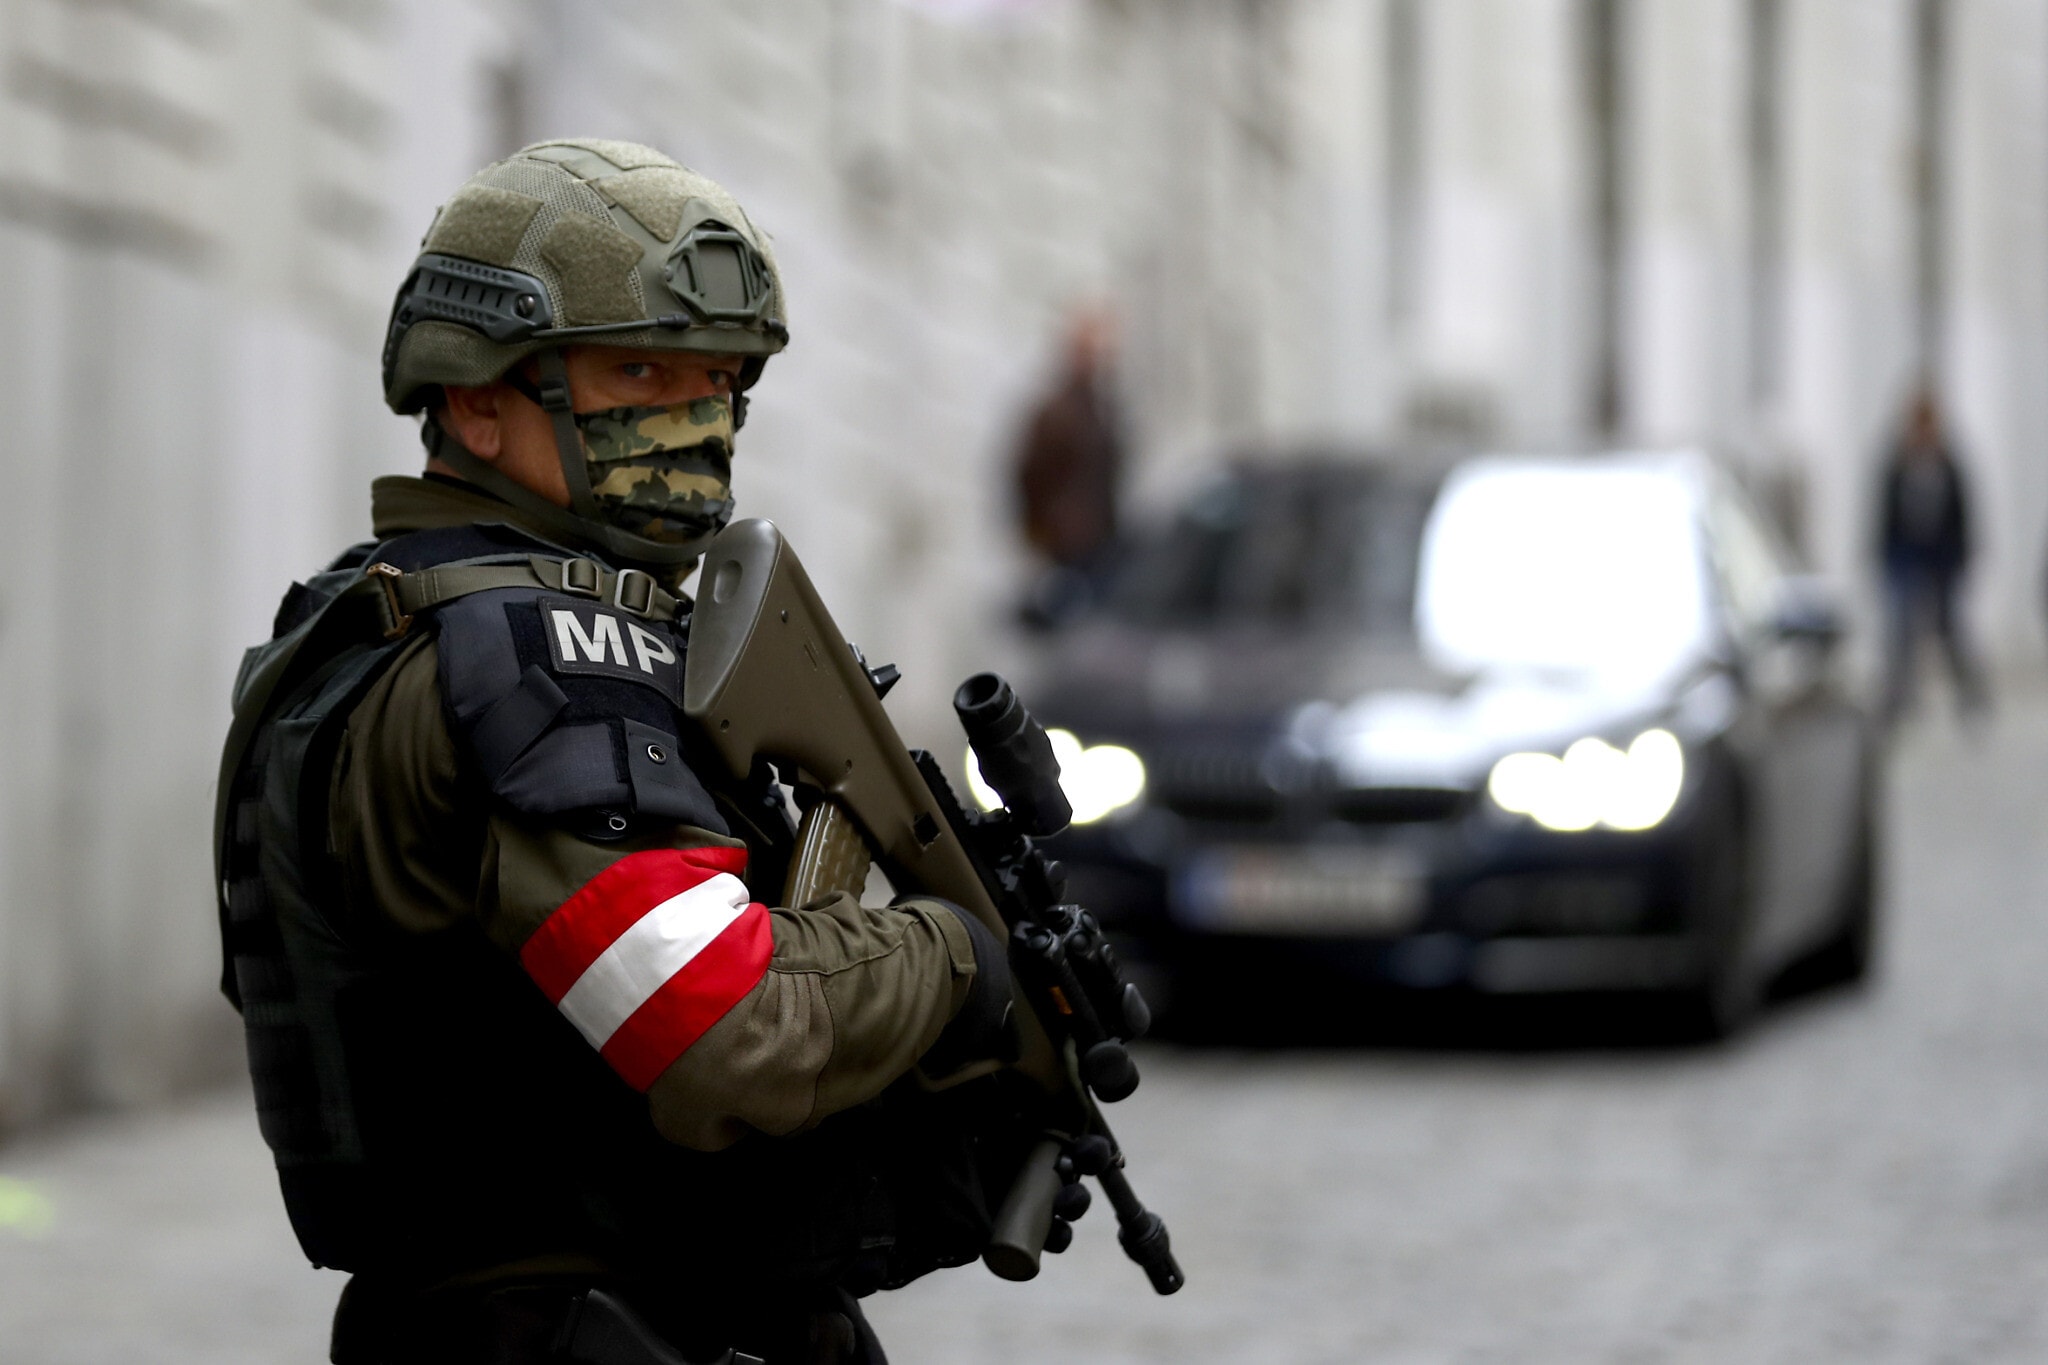 שוטר צבאי בזירת הפיגוע ליד בית הכנסת בווינה, אוסטריה, 4 בנובמבר 2020 (צילום: AP Photo/Matthias Schrader)